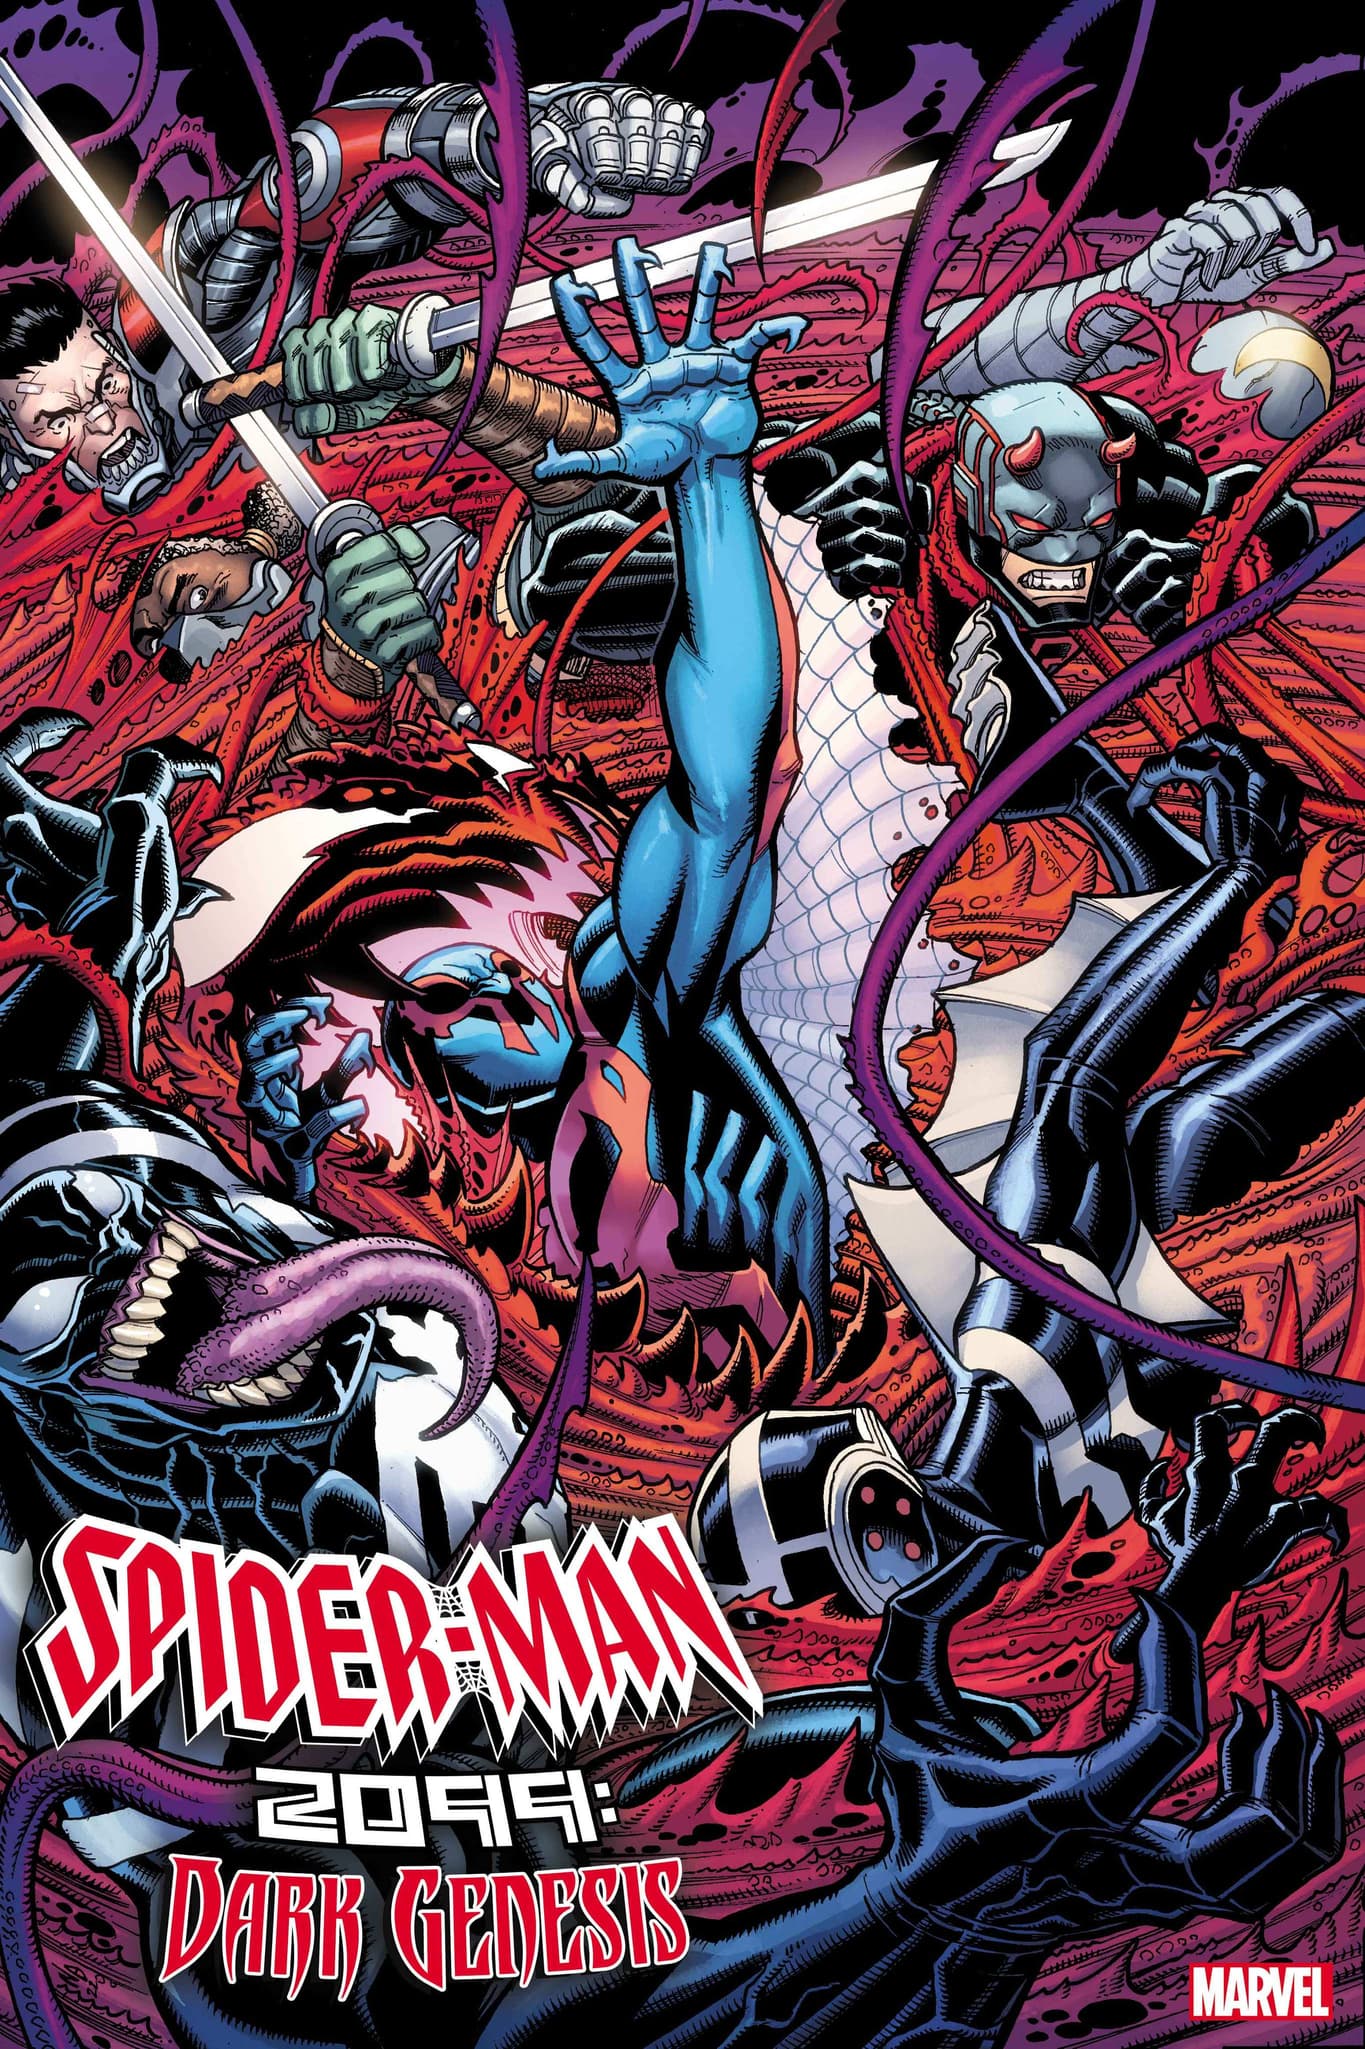 SPIDER-MAN 2099: DARK GENESIS #5 cover by Nick Bradshaw